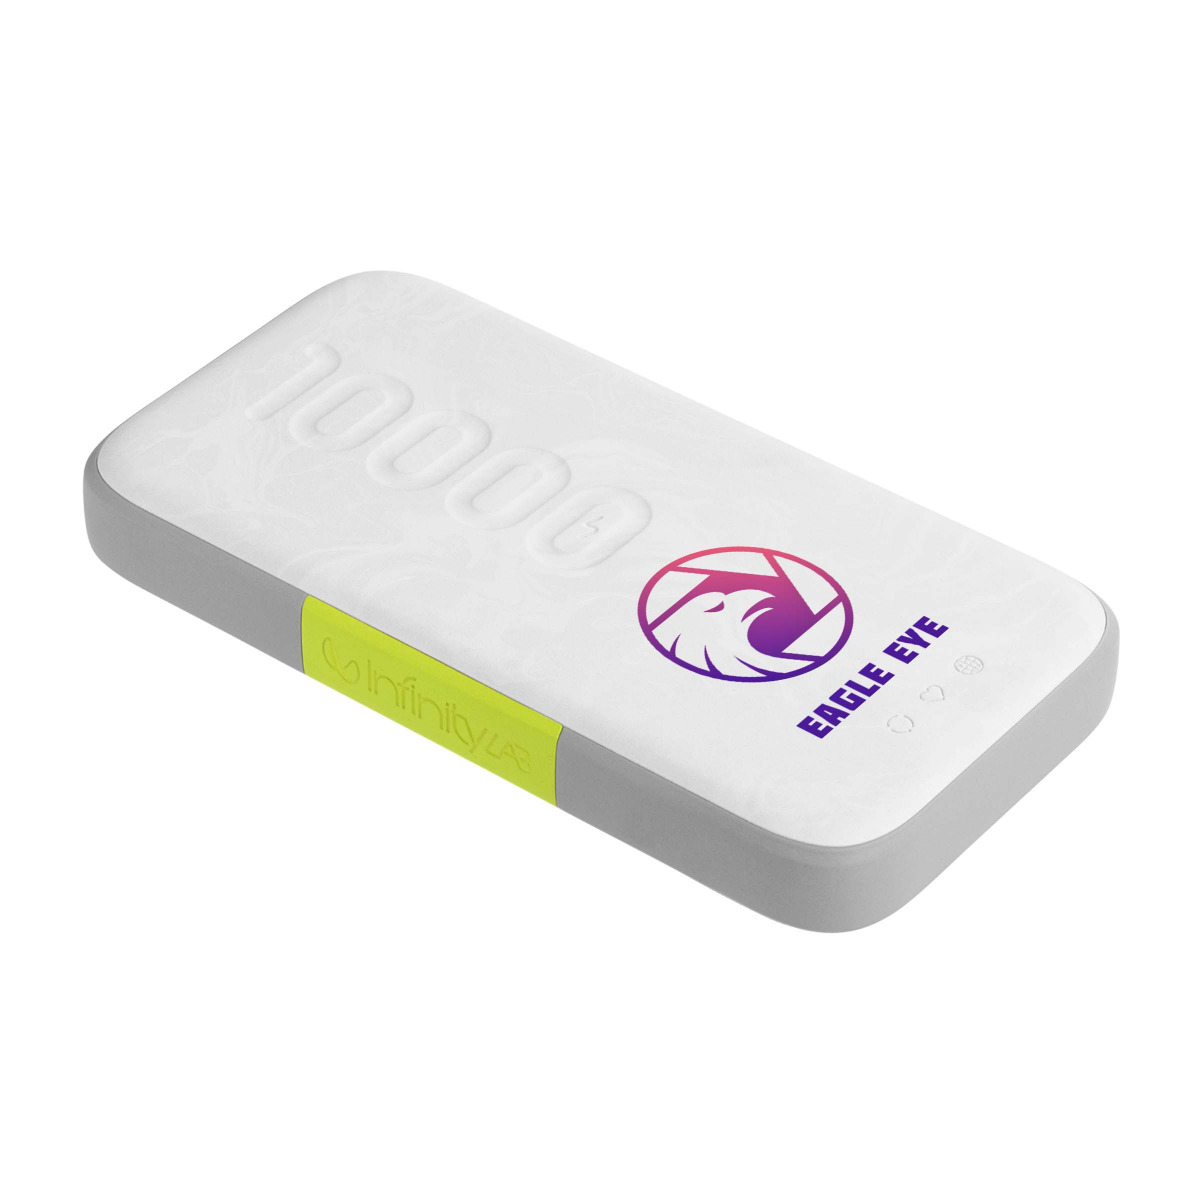 InfinityLab InstantGo 10000 Wireless - Personalizzabile con una stampa full color e una sleeve